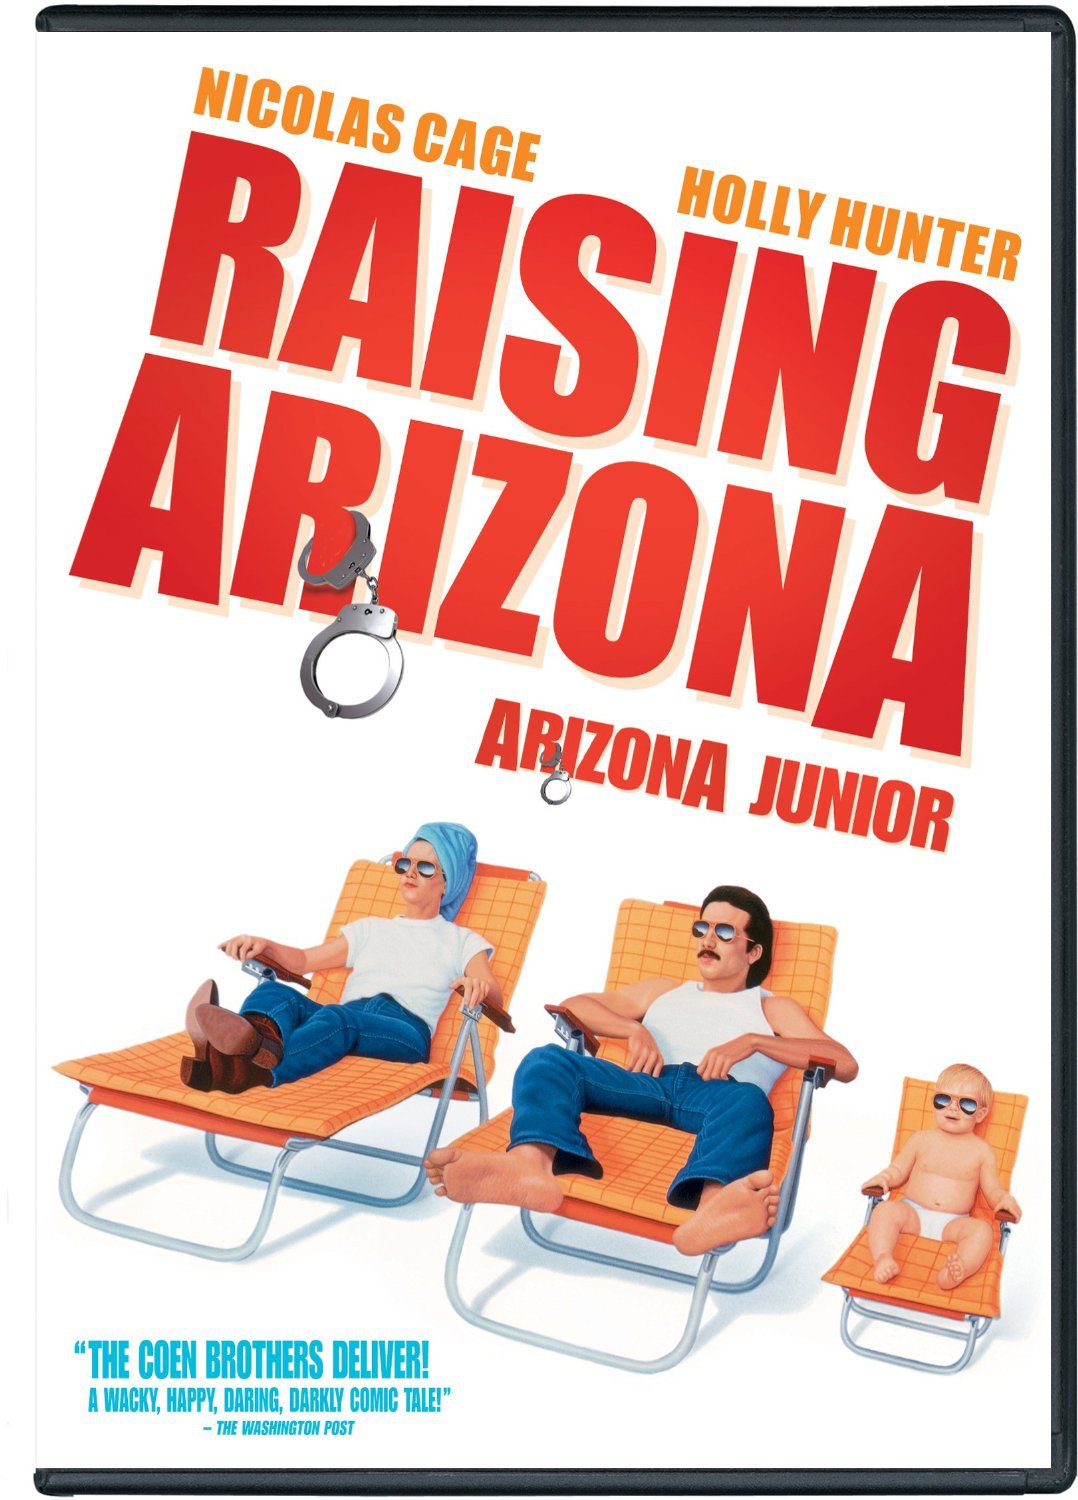 Raising Arizona